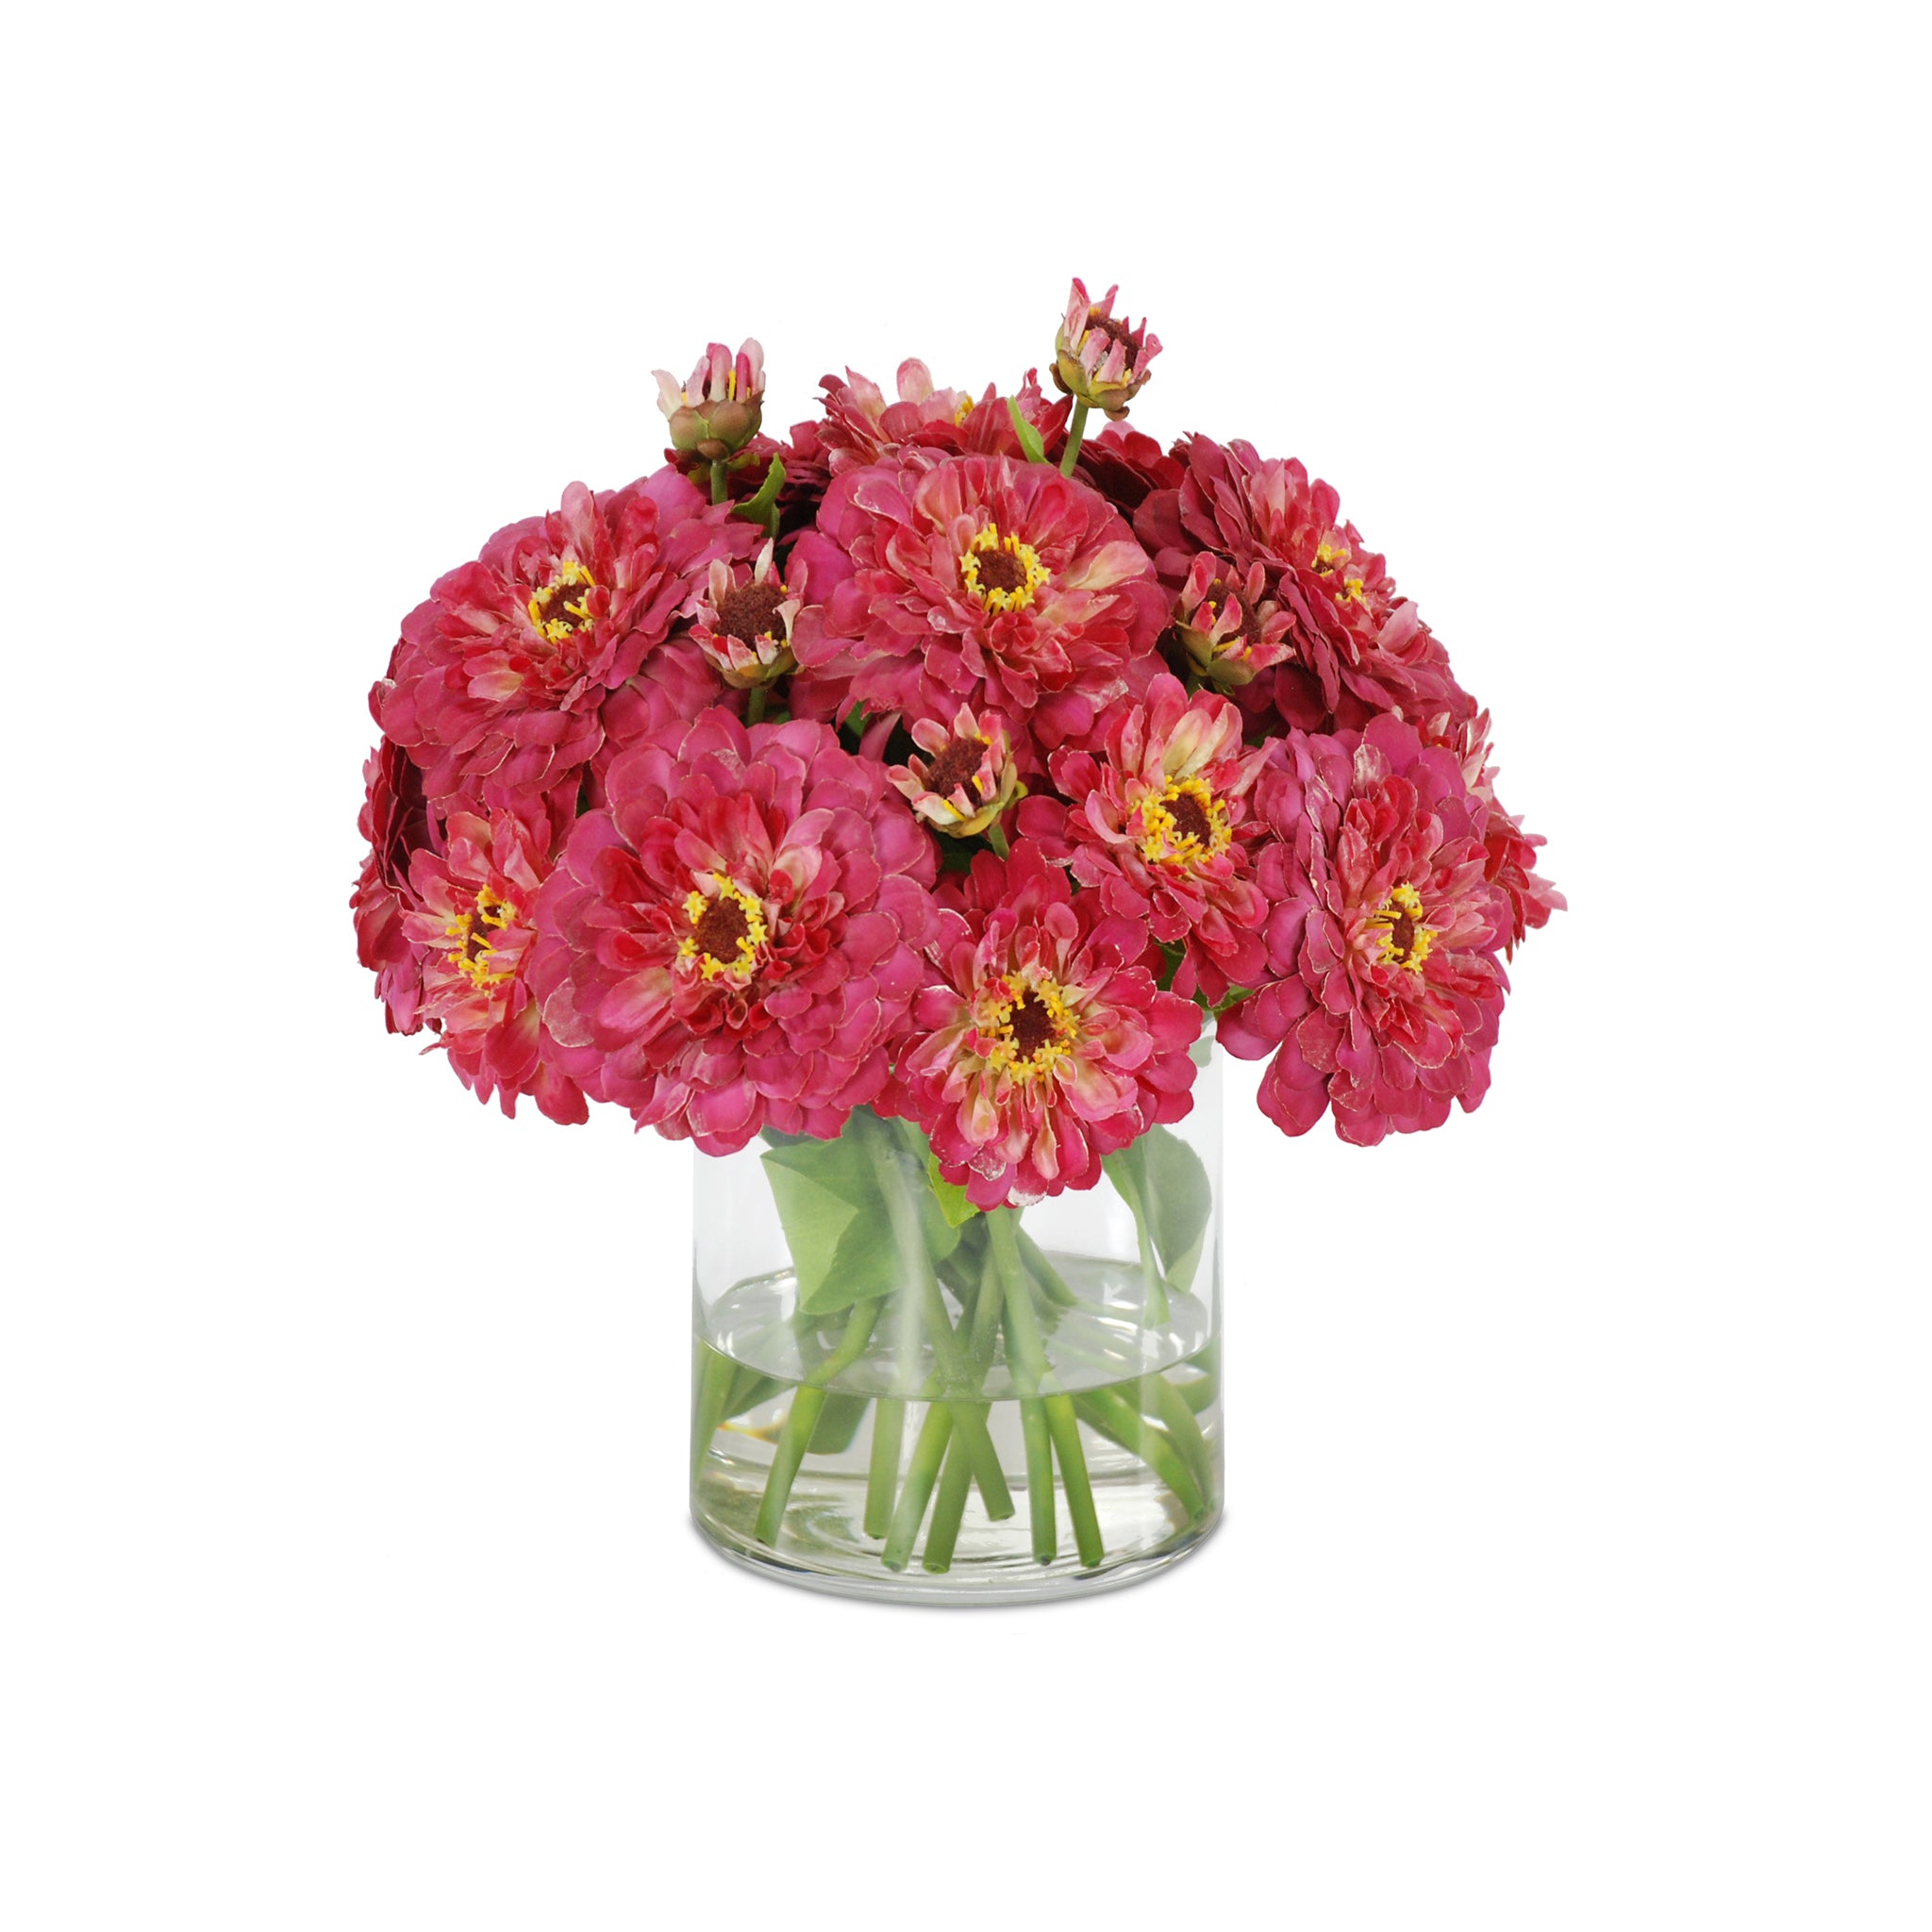 The Cranbury Park Bouquet